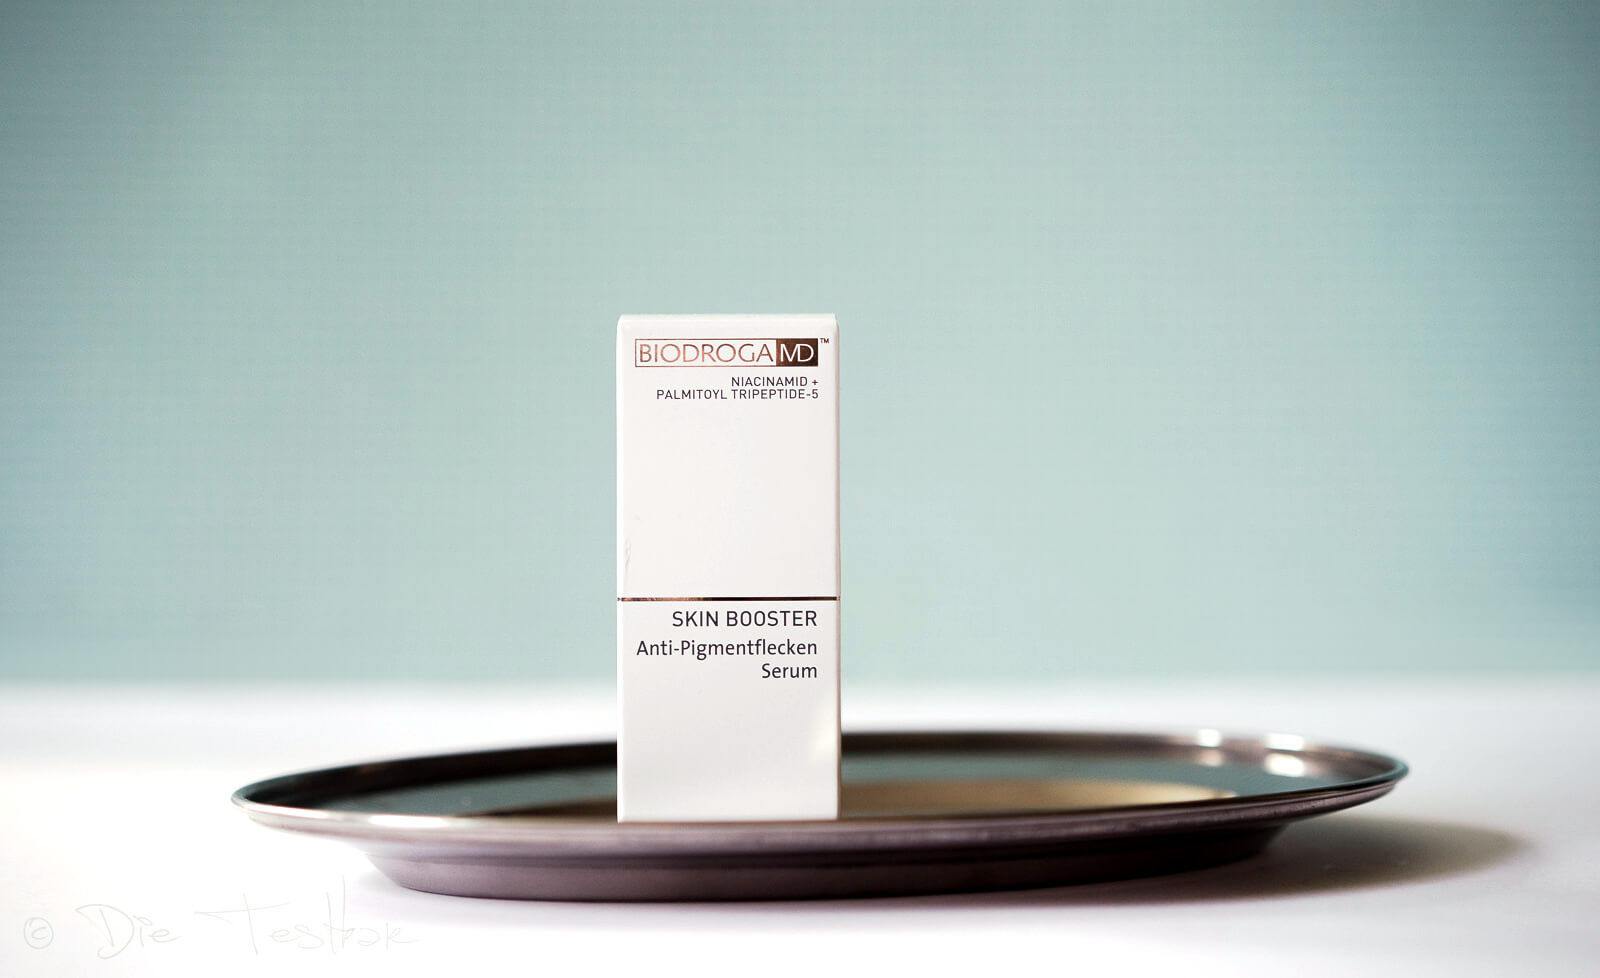 SKIN BOOSTER - Anti-Pigmentflecken Serum von Biodroga MD